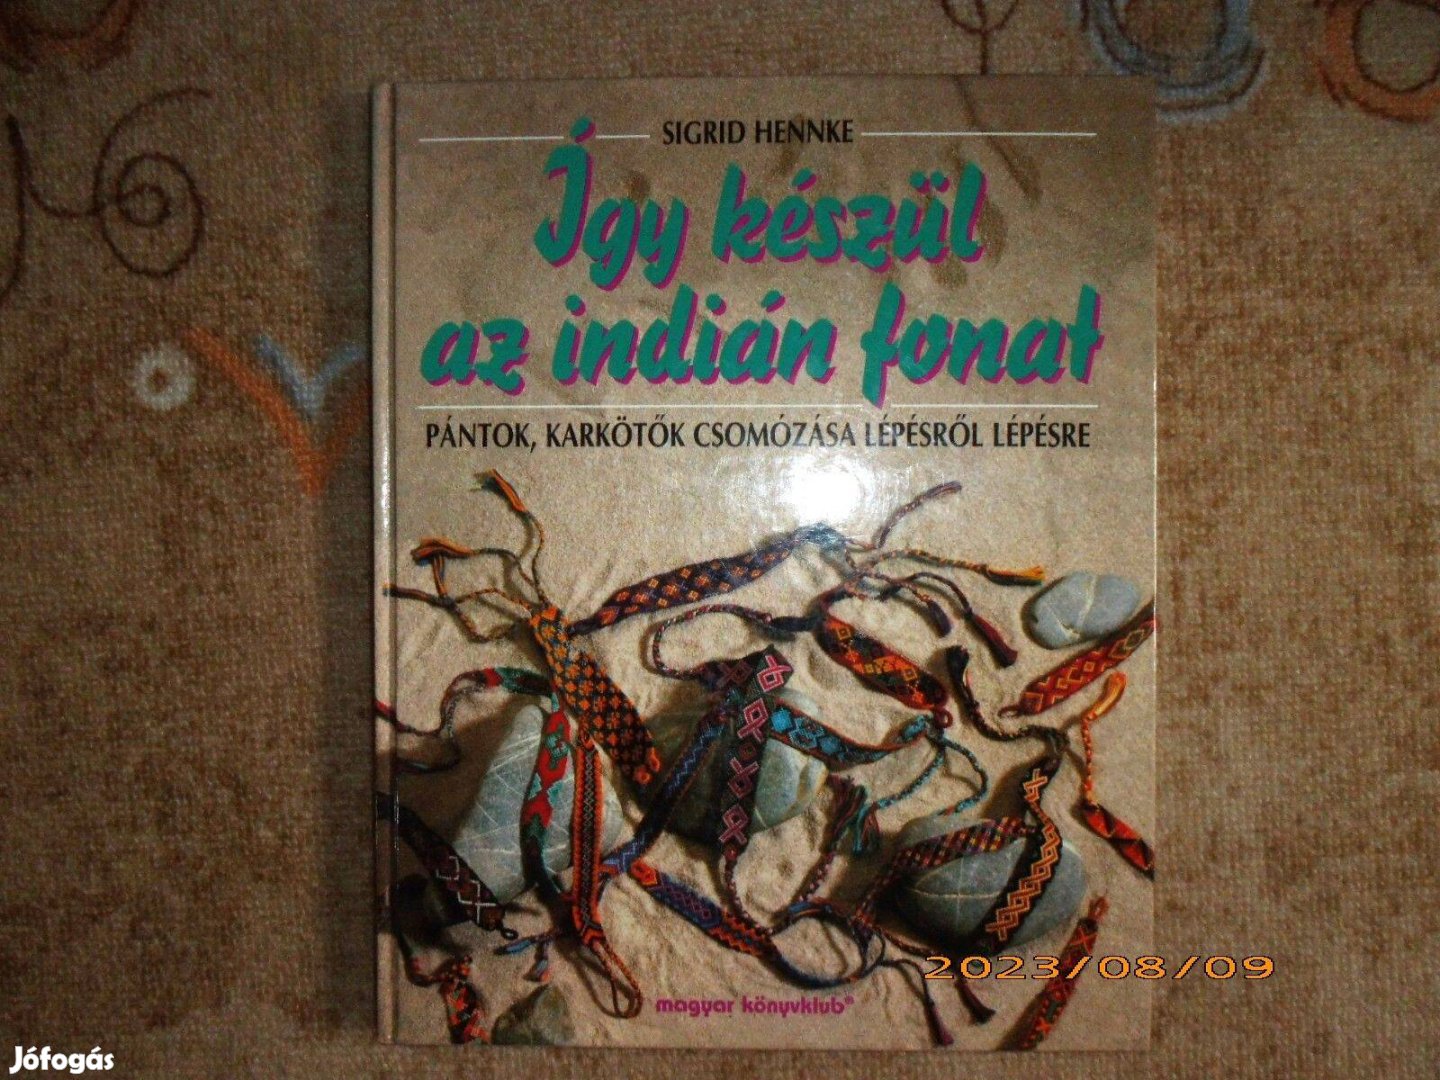 Magyar Könyvklub: Így készül az indián fonat